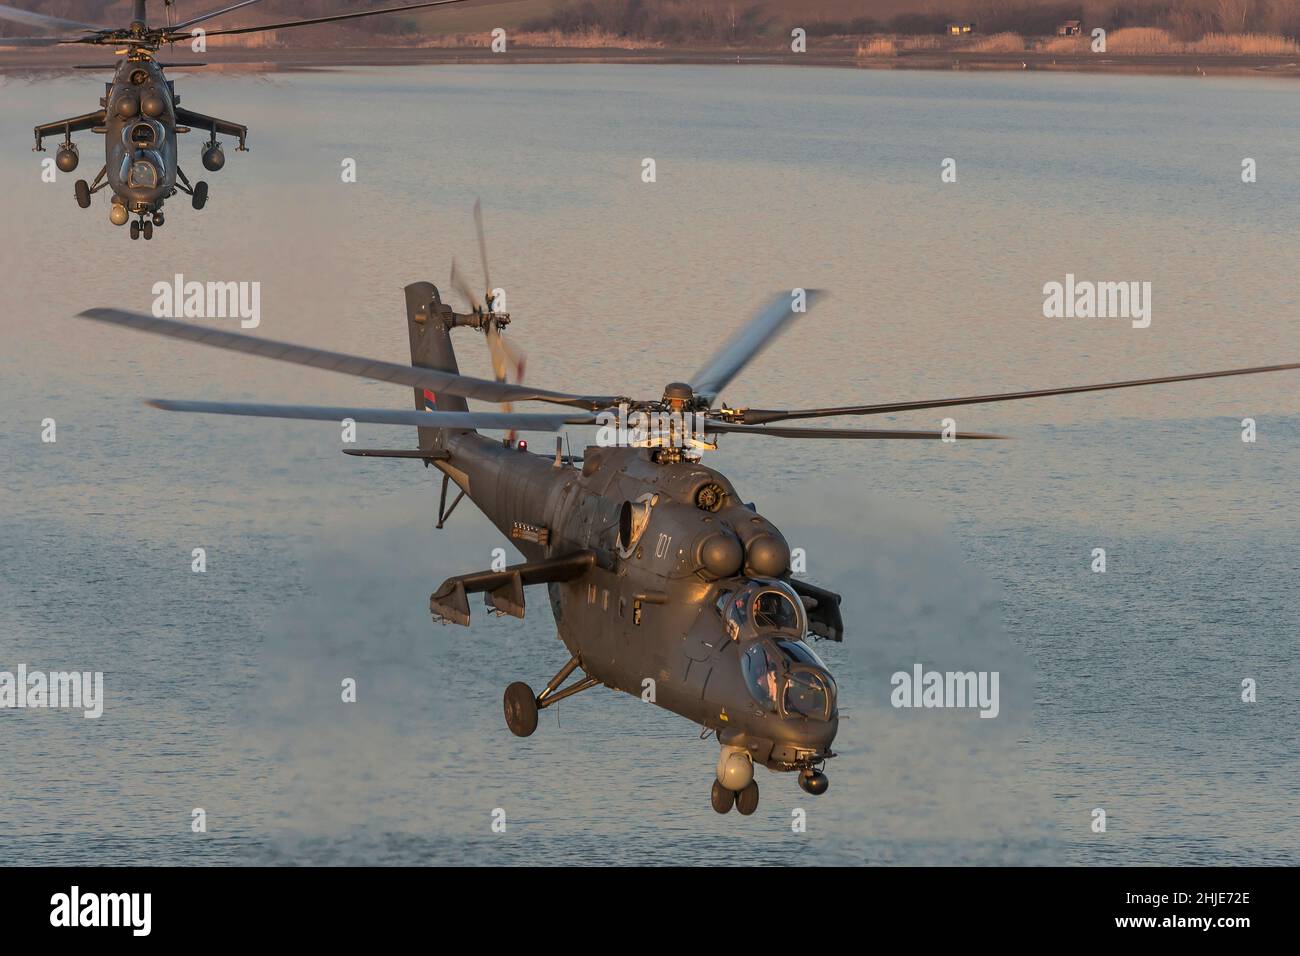 Serbische Luftwaffe Russian Helicopters Mil MI/35M *NATO meldename: Hind) Kampfhubschrauber Kanonenschiffe im Flug über Wasser Stockfoto